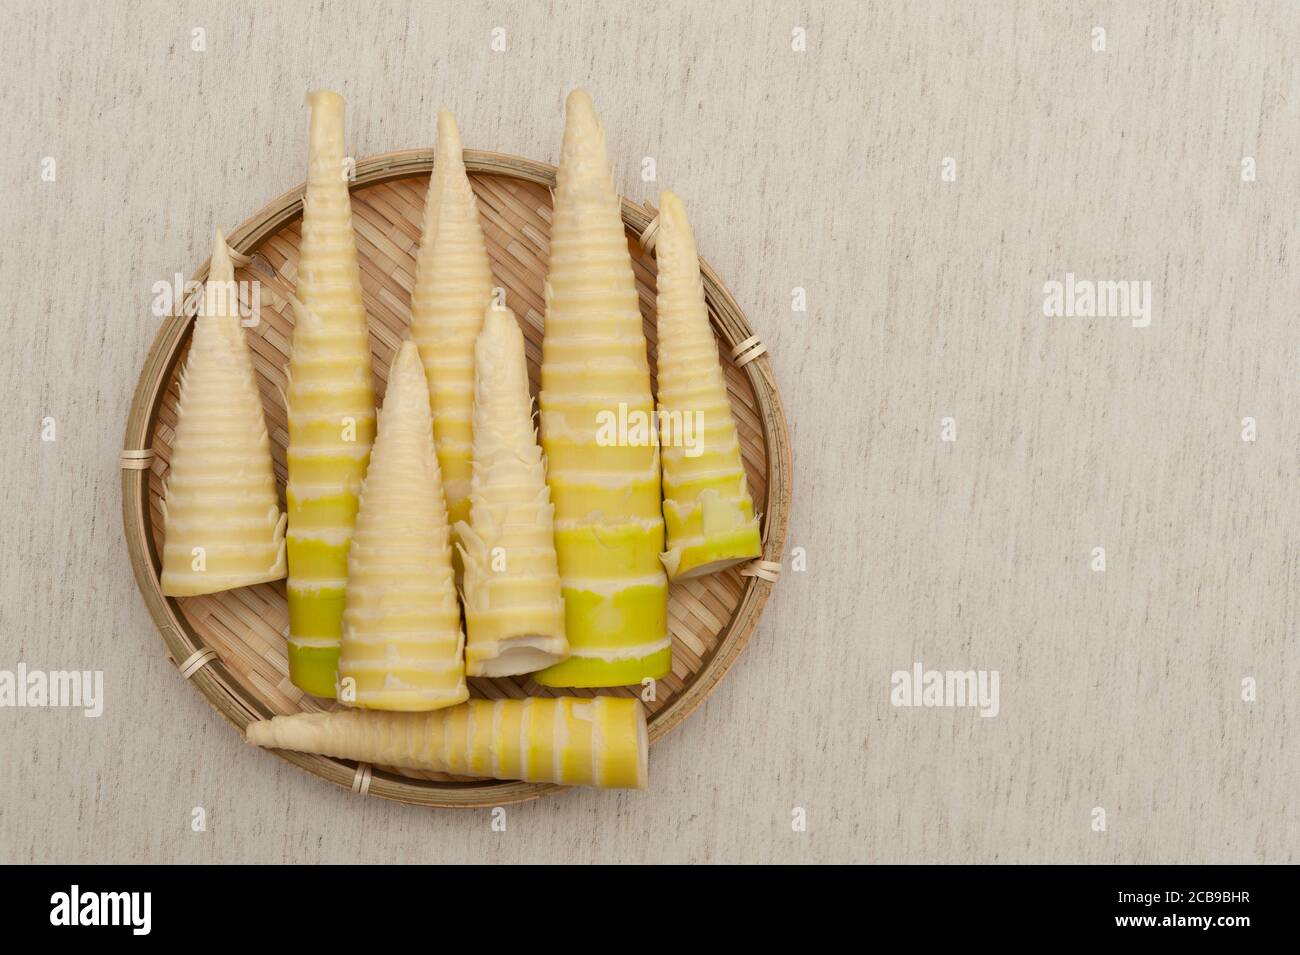 Cucina Giapponese - Shoot di bambù grezzo sbucciato in un vassoio di bambù intrecciato isolato su sfondo beige. Vista dall'alto. Spazio di copia. Foto Stock